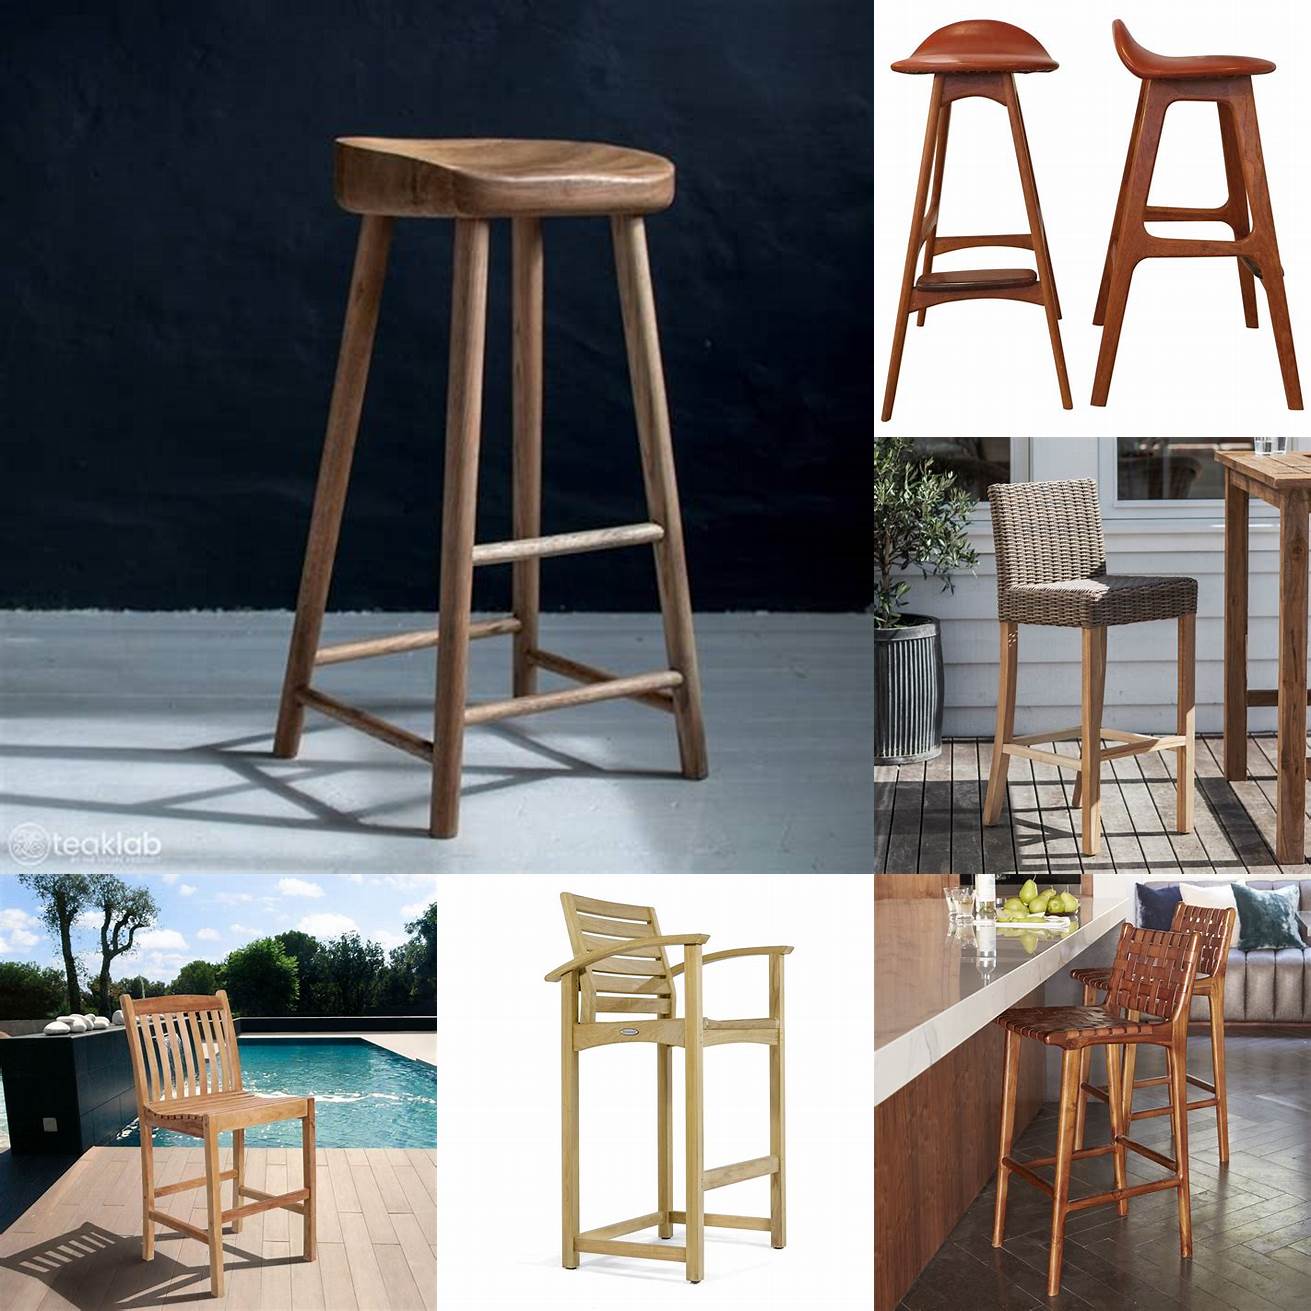 A teak wood bar stool